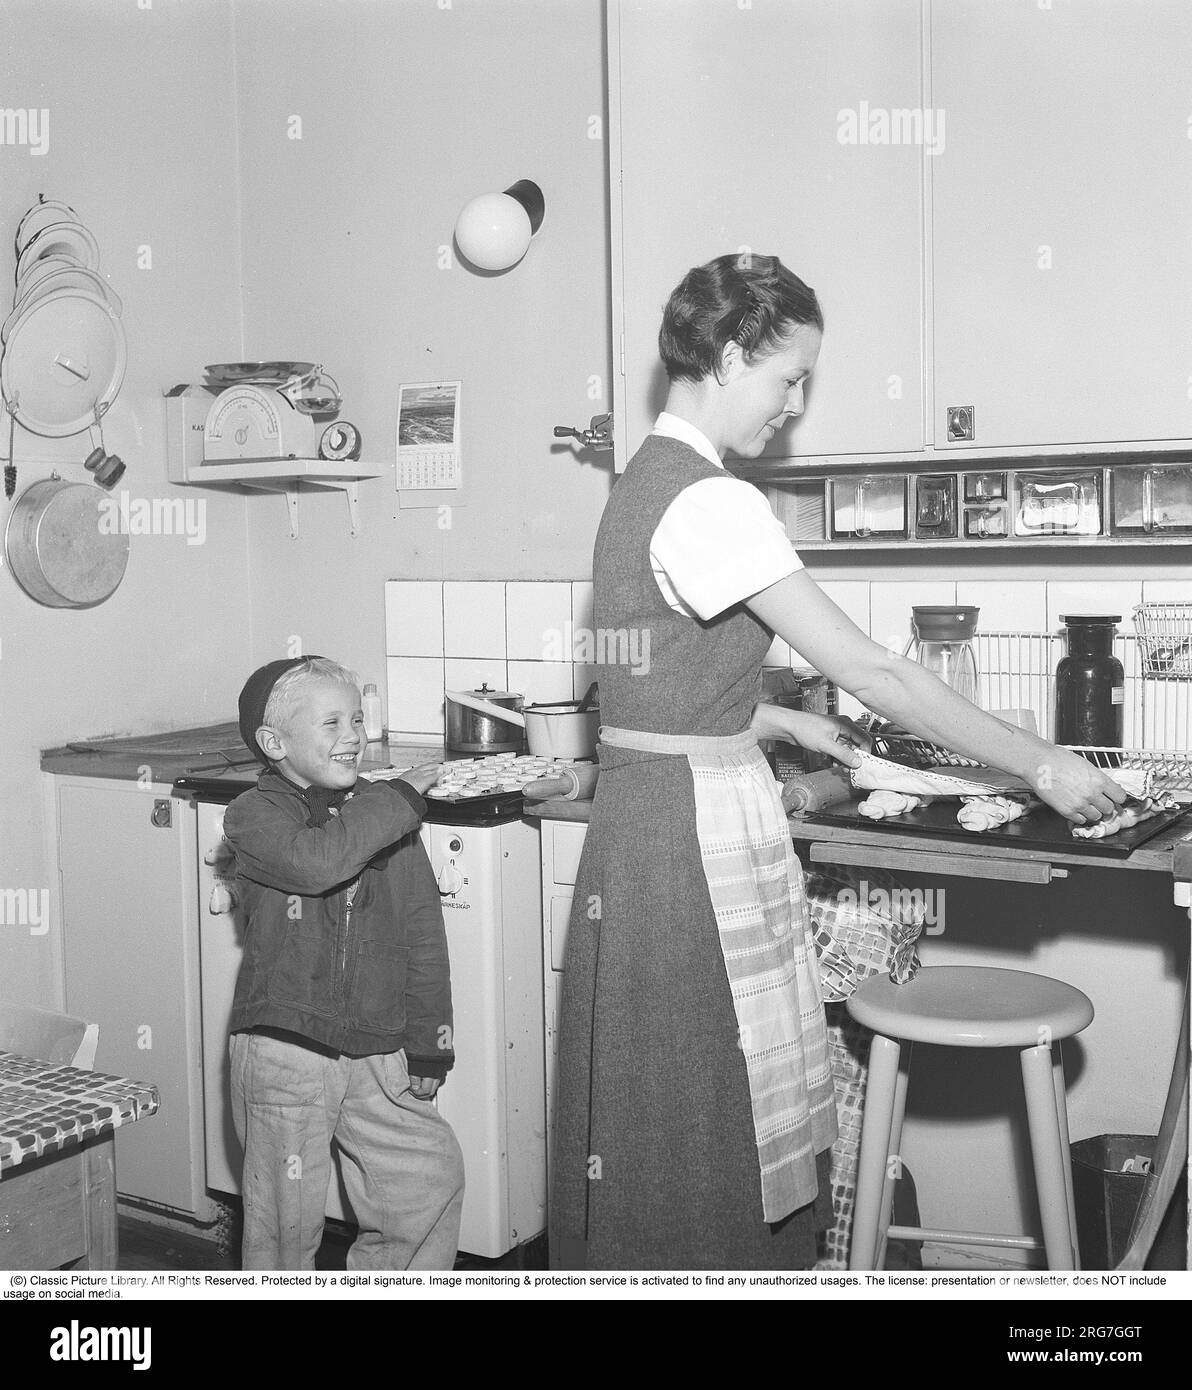 Backen in den 1950er. Eine Mutter mit ihrem Sohn in der Küche. Sie backt süßes Brot und Brötchen. Ein bereits gebackener Teller mit Kochis ist verlockend und der Junge streckt nach einem, wenn seine Mutter wegschaut. Schweden 1958 Kristoffersson Ref BY20-2 Stockfoto